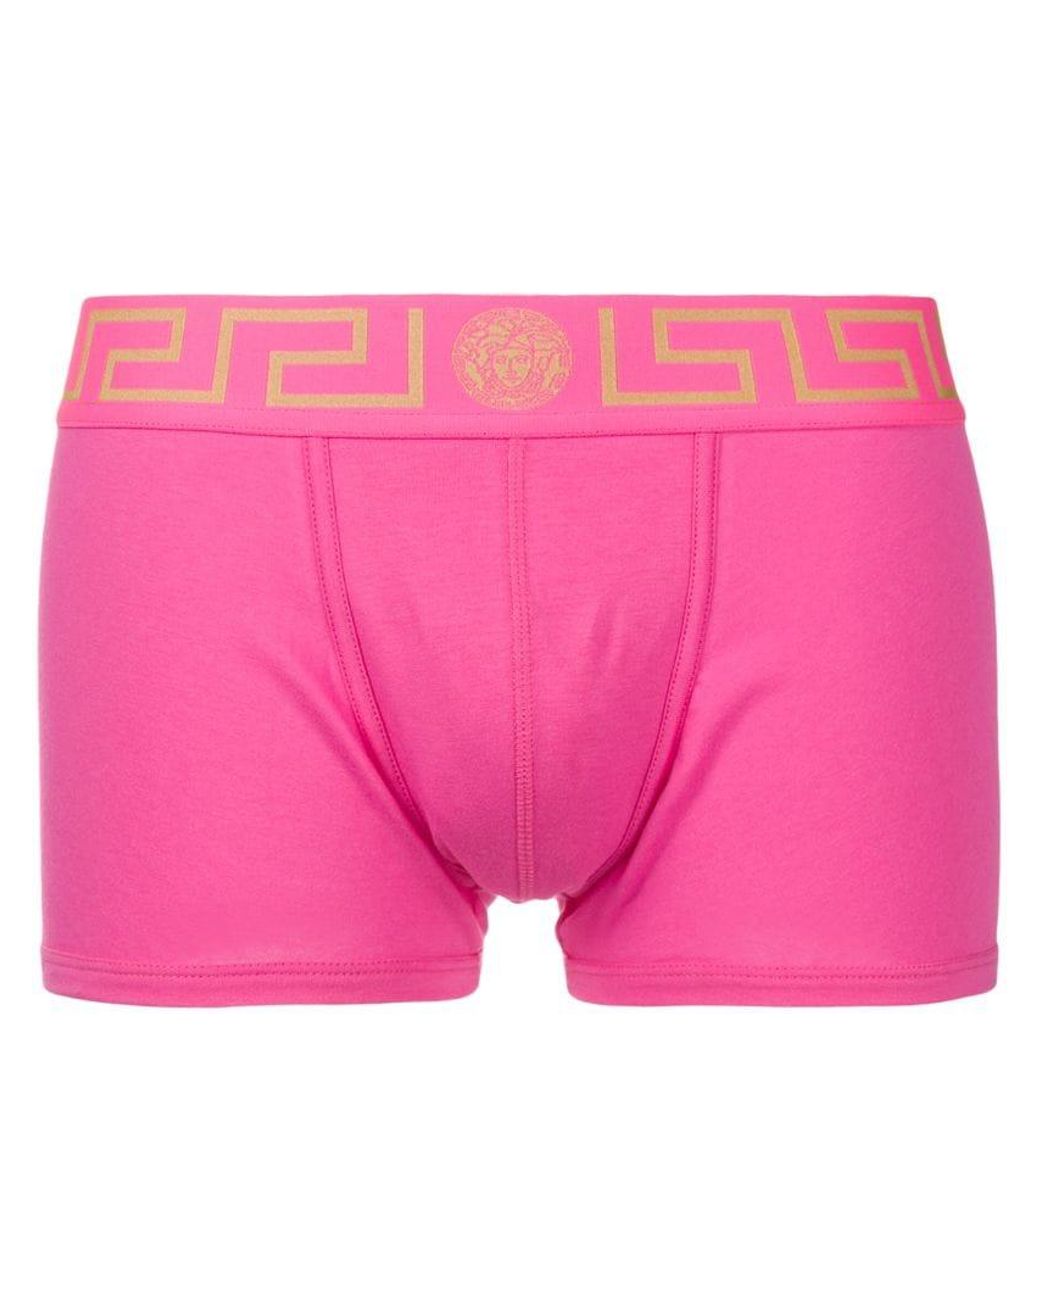 Versace Greca Border Boxers in Pink for Men